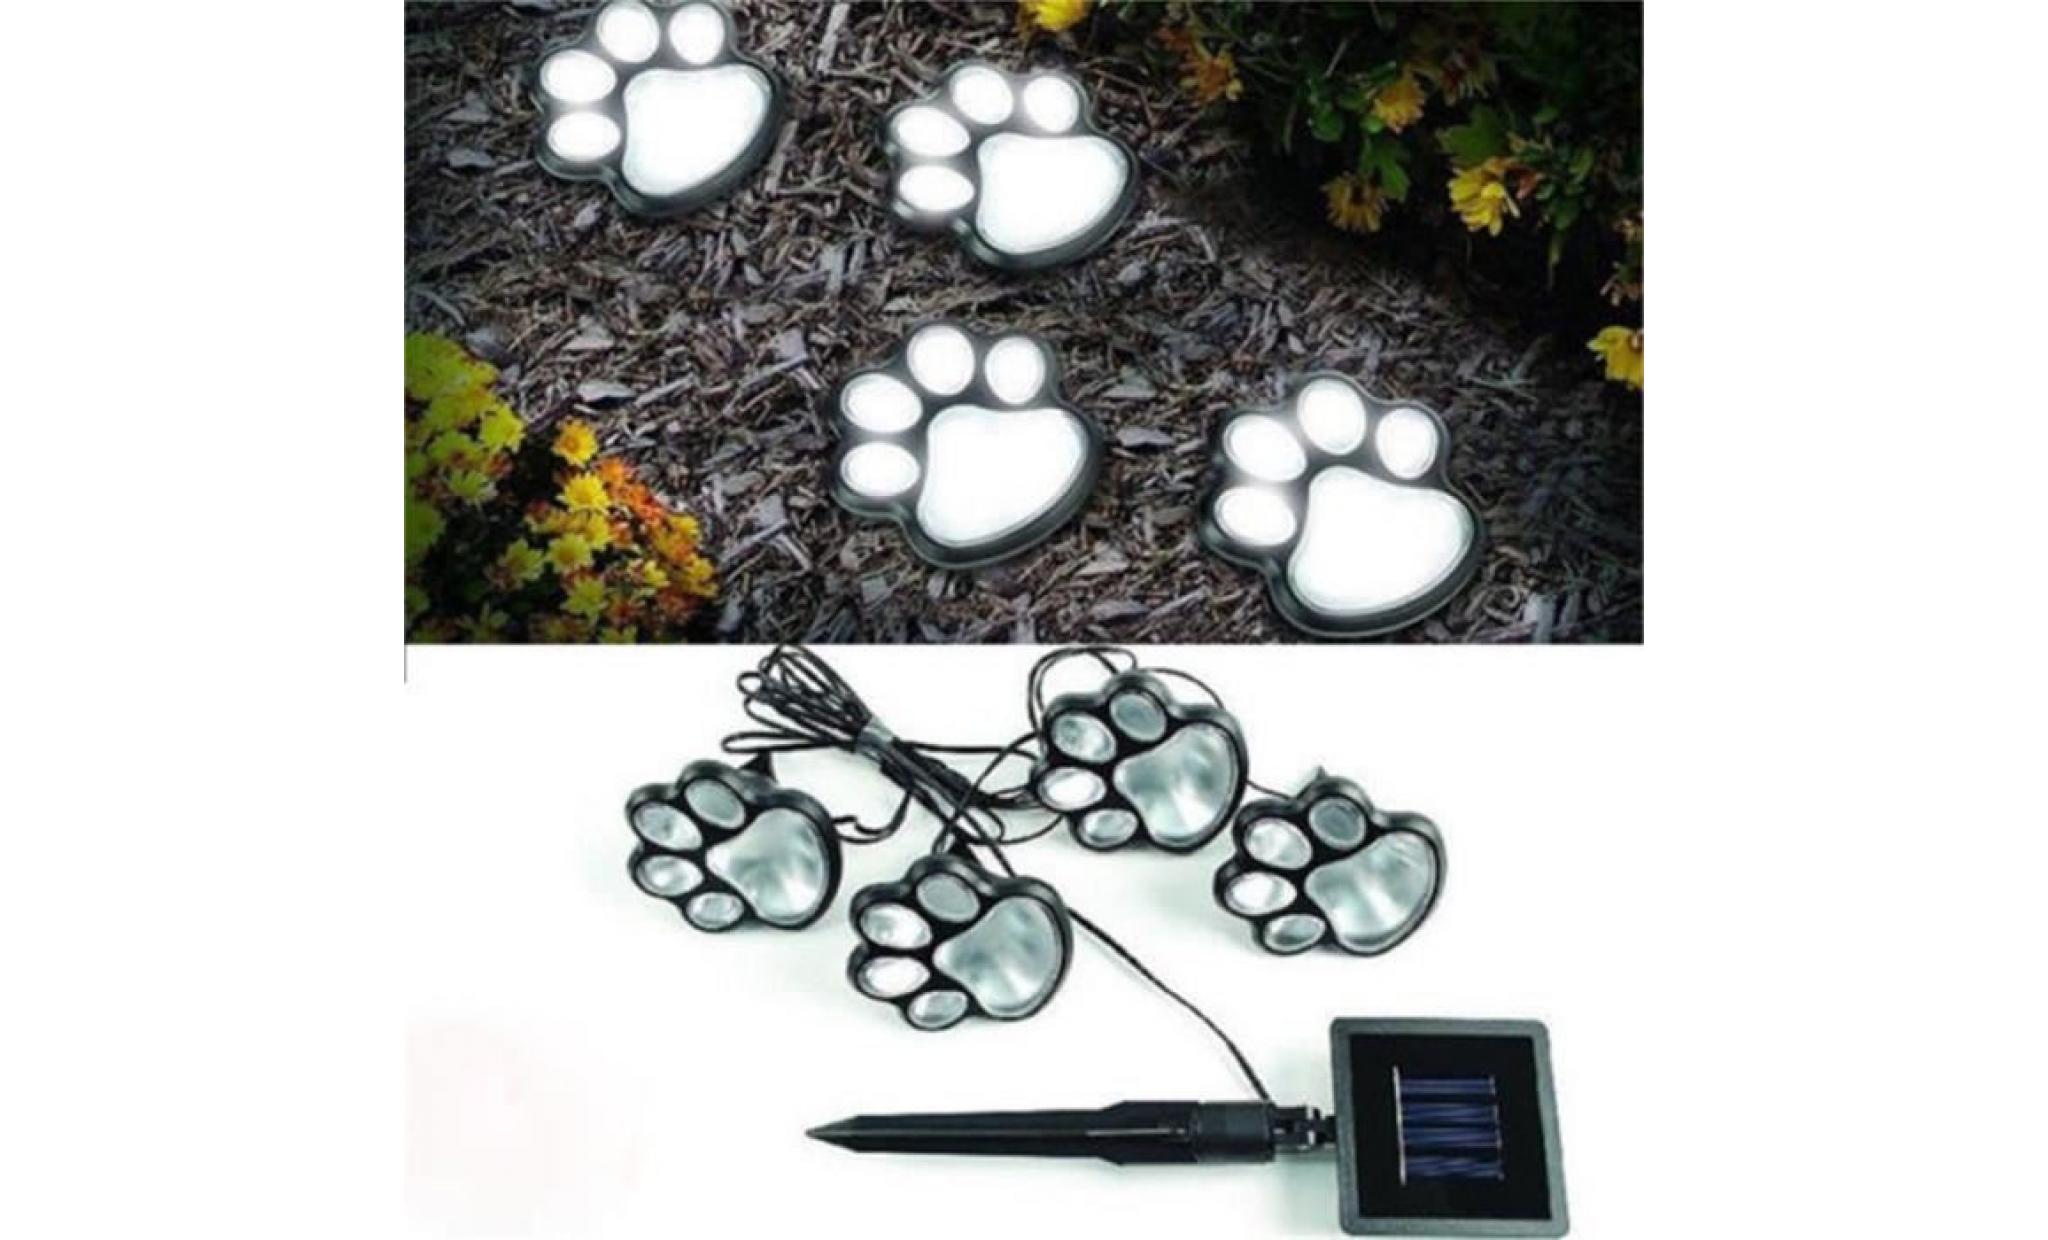 hot 4 solaire chien chat animal patte jardin extérieur imprimer lumières lampe led chemin automatique sur@ hexqq248